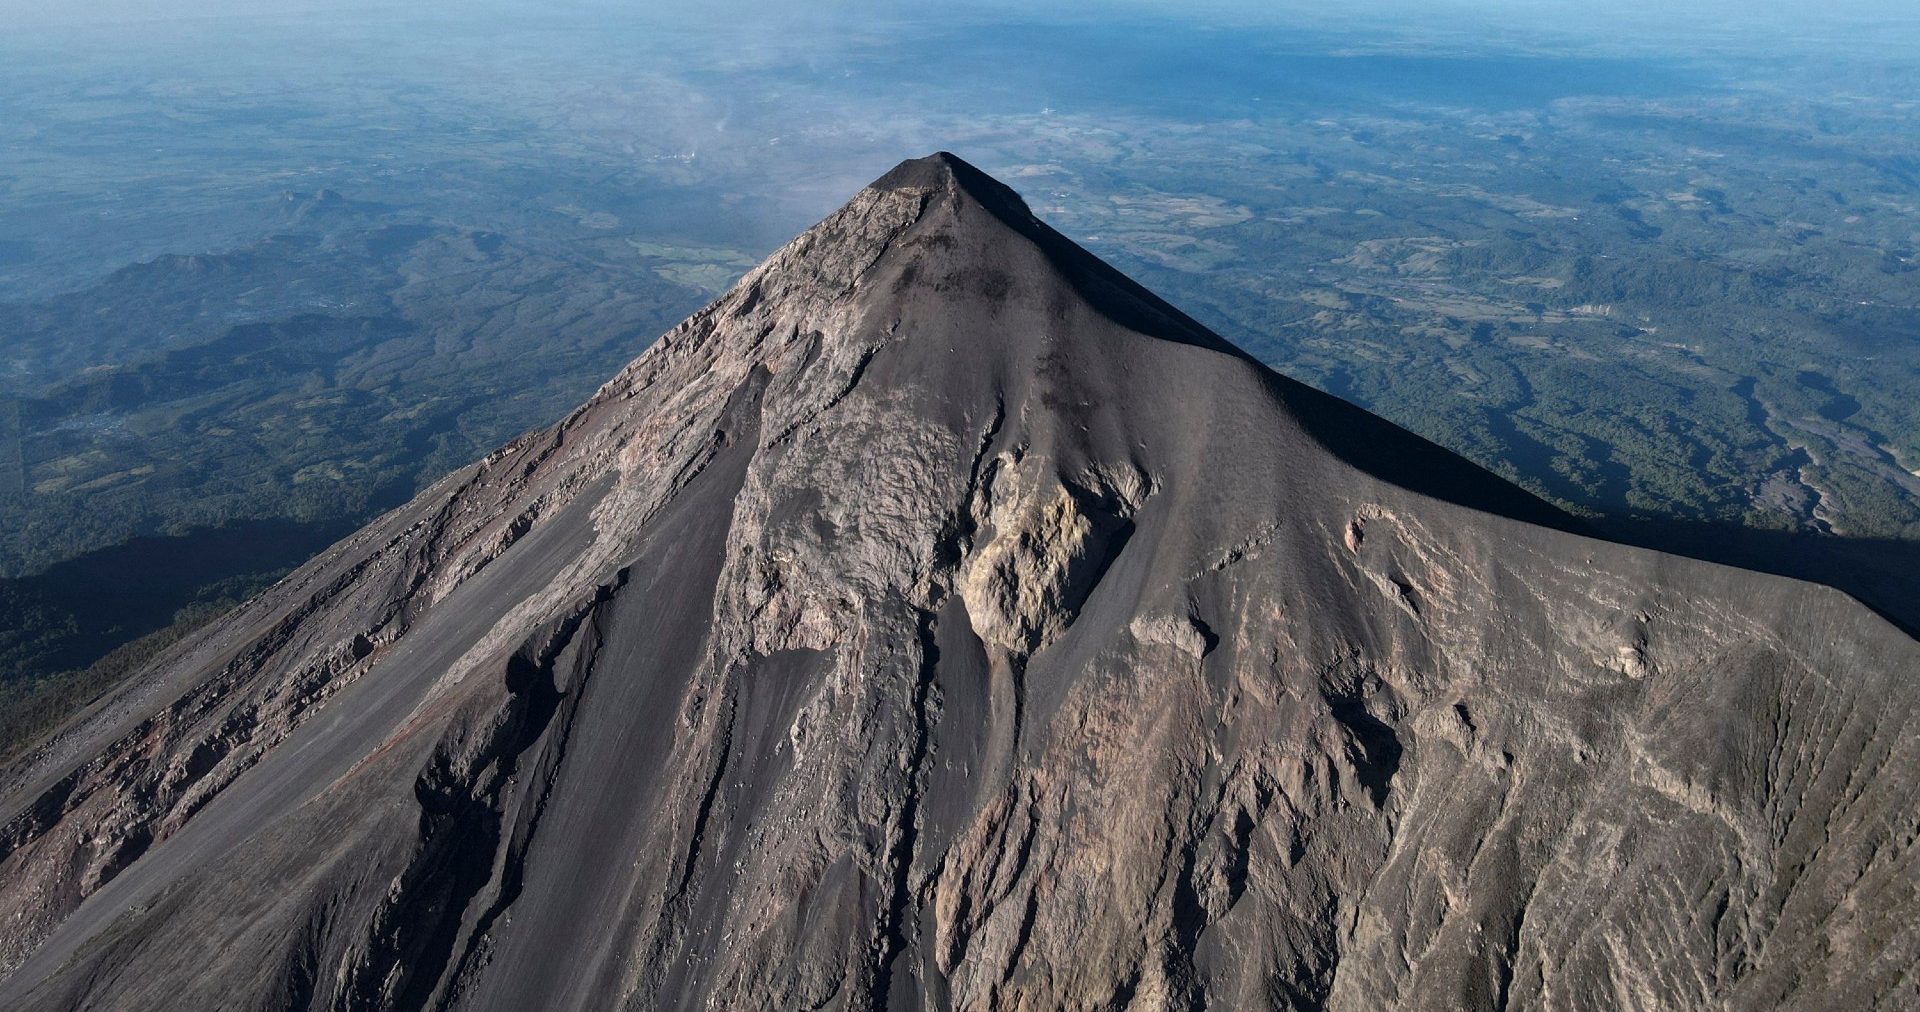 Volcán de Fuego, Guatemala registra explosiones y expulsa ceniza